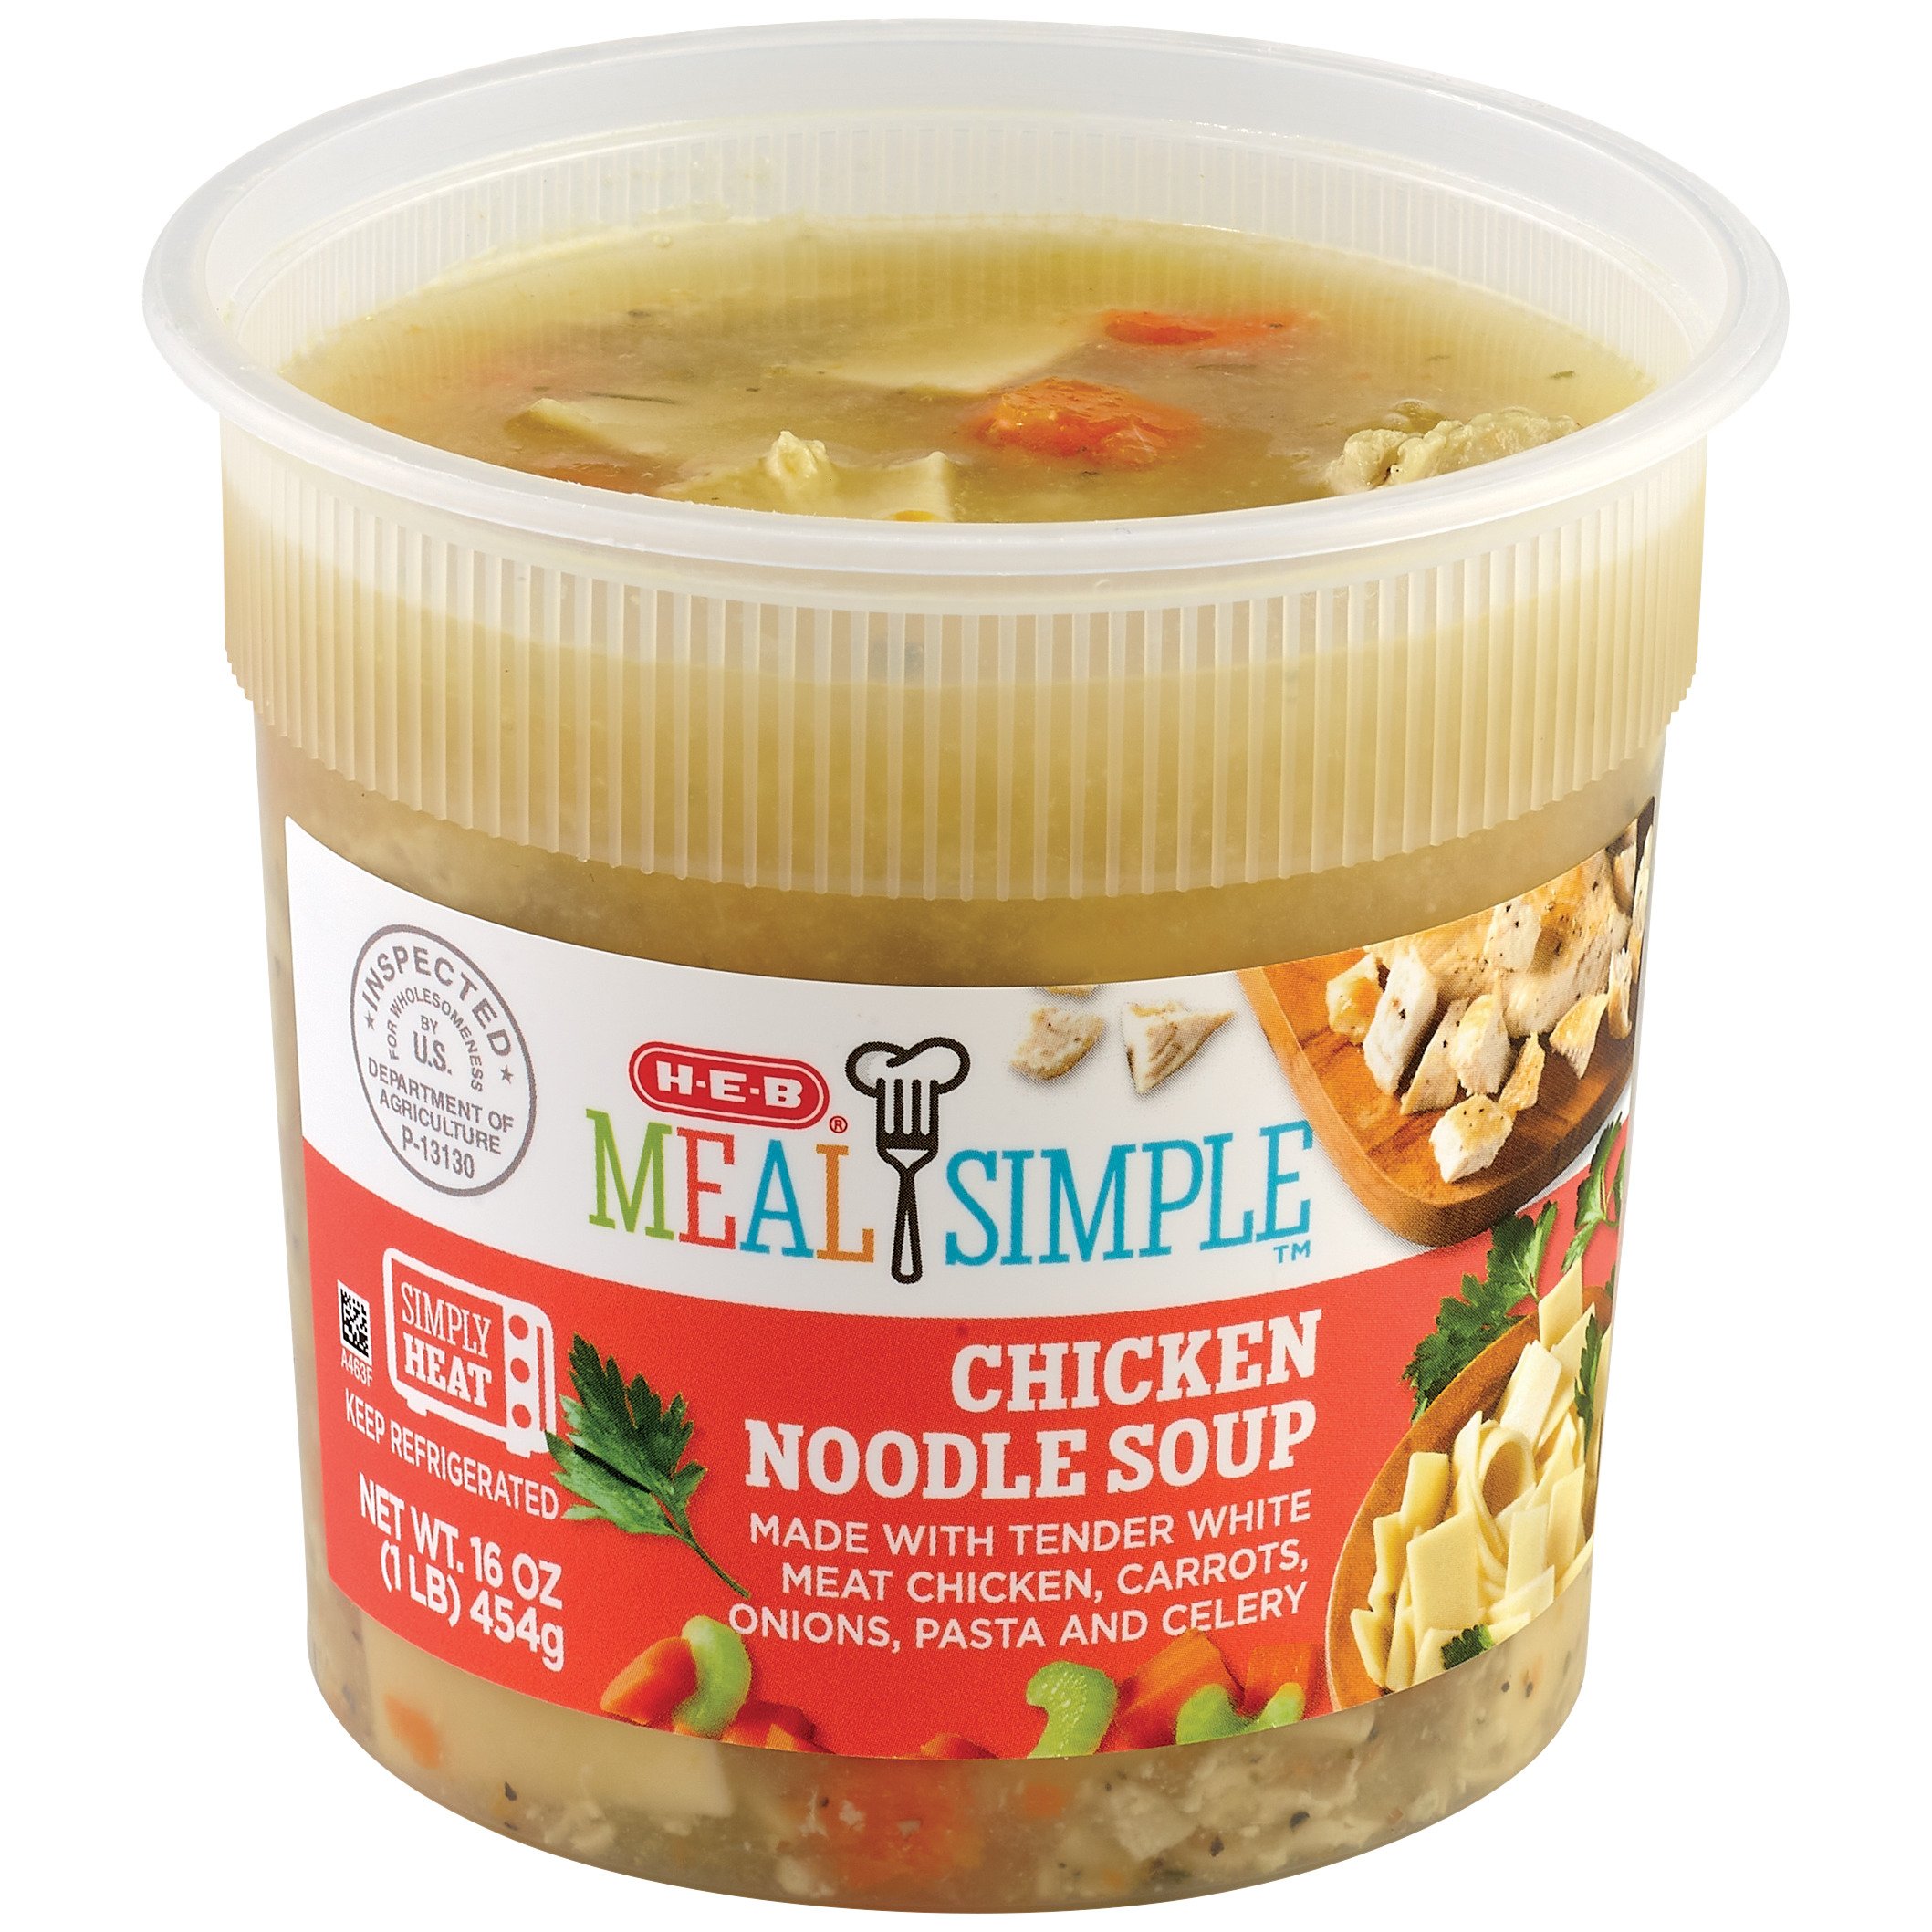 Meal Simple by H-E-B Chicken Noodle Soup - Shop Soup at H-E-B